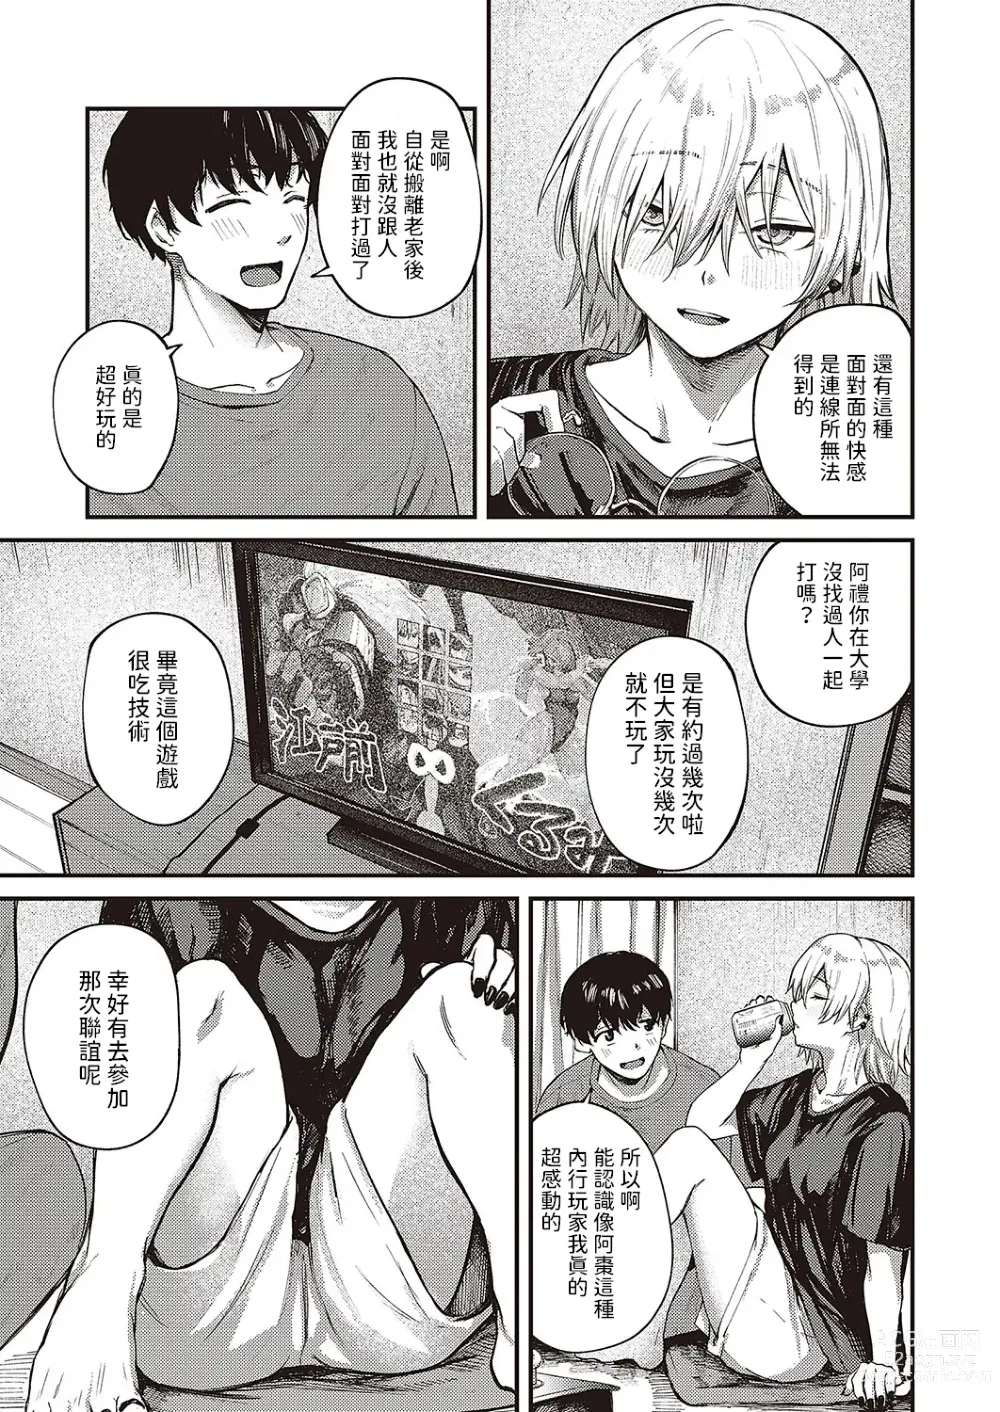 Page 7 of manga Tooriame